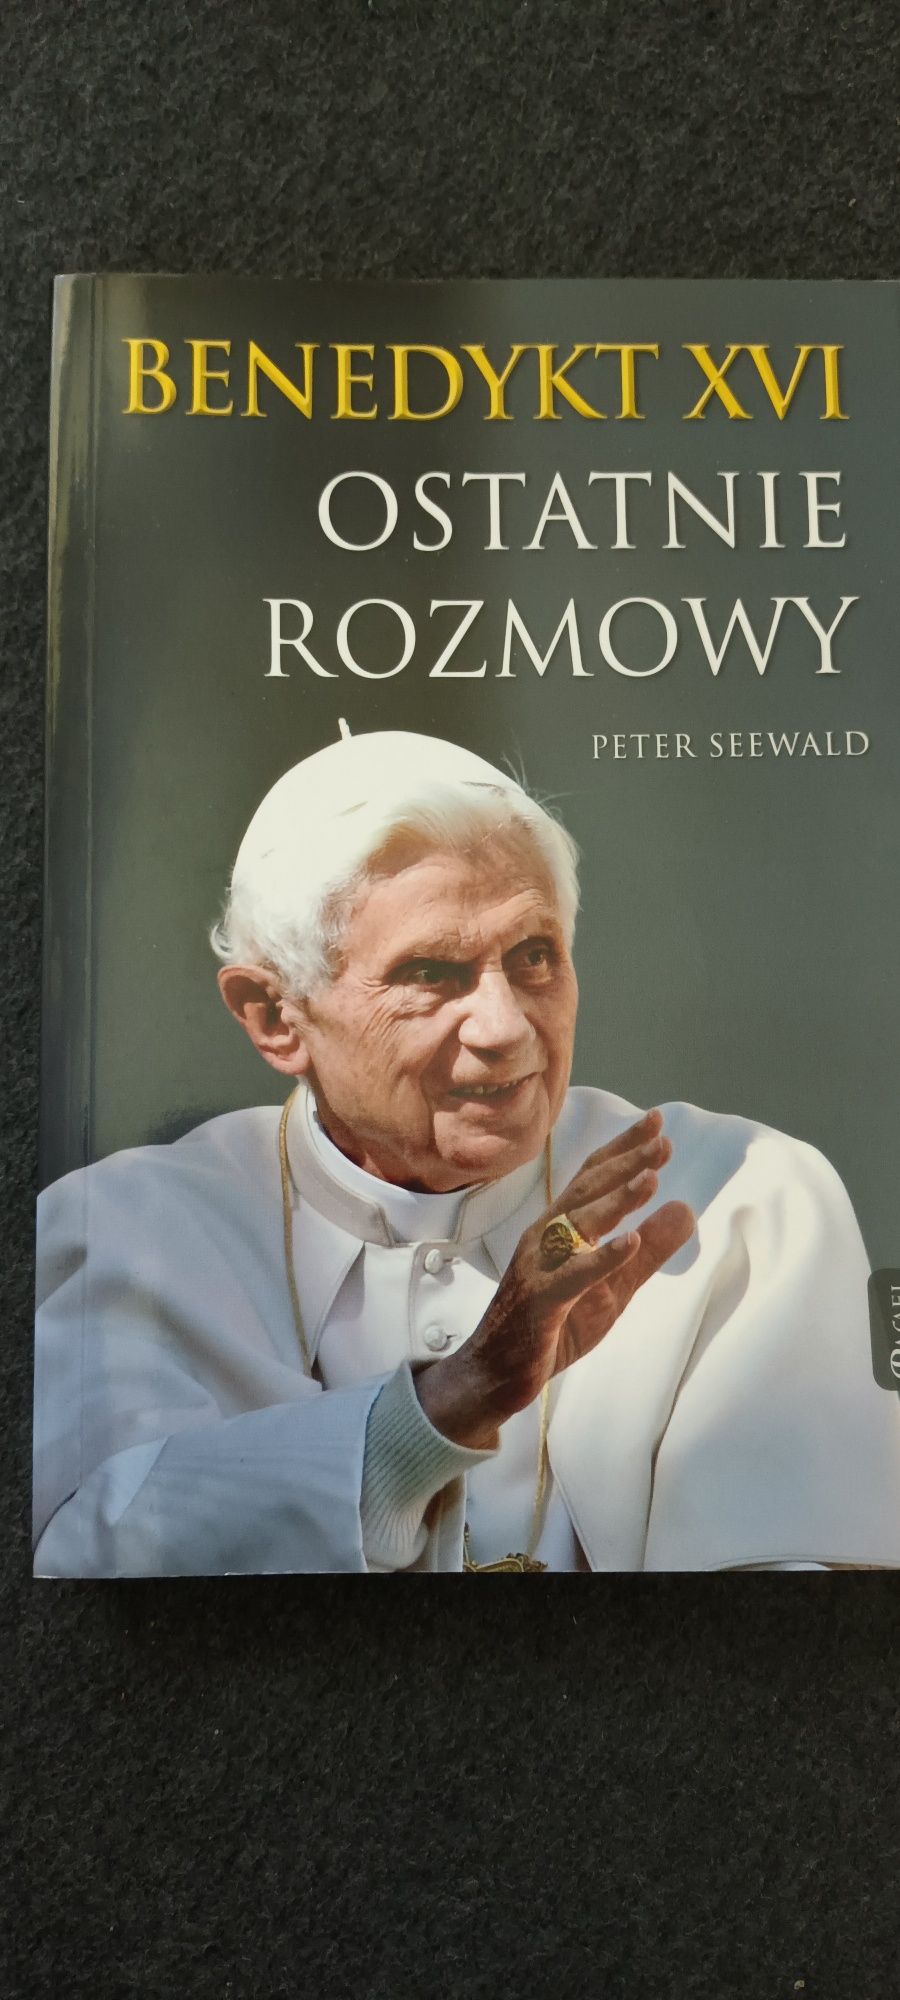 Benedykt XVI / Ostatnie Rozmowy / Peter Seewald